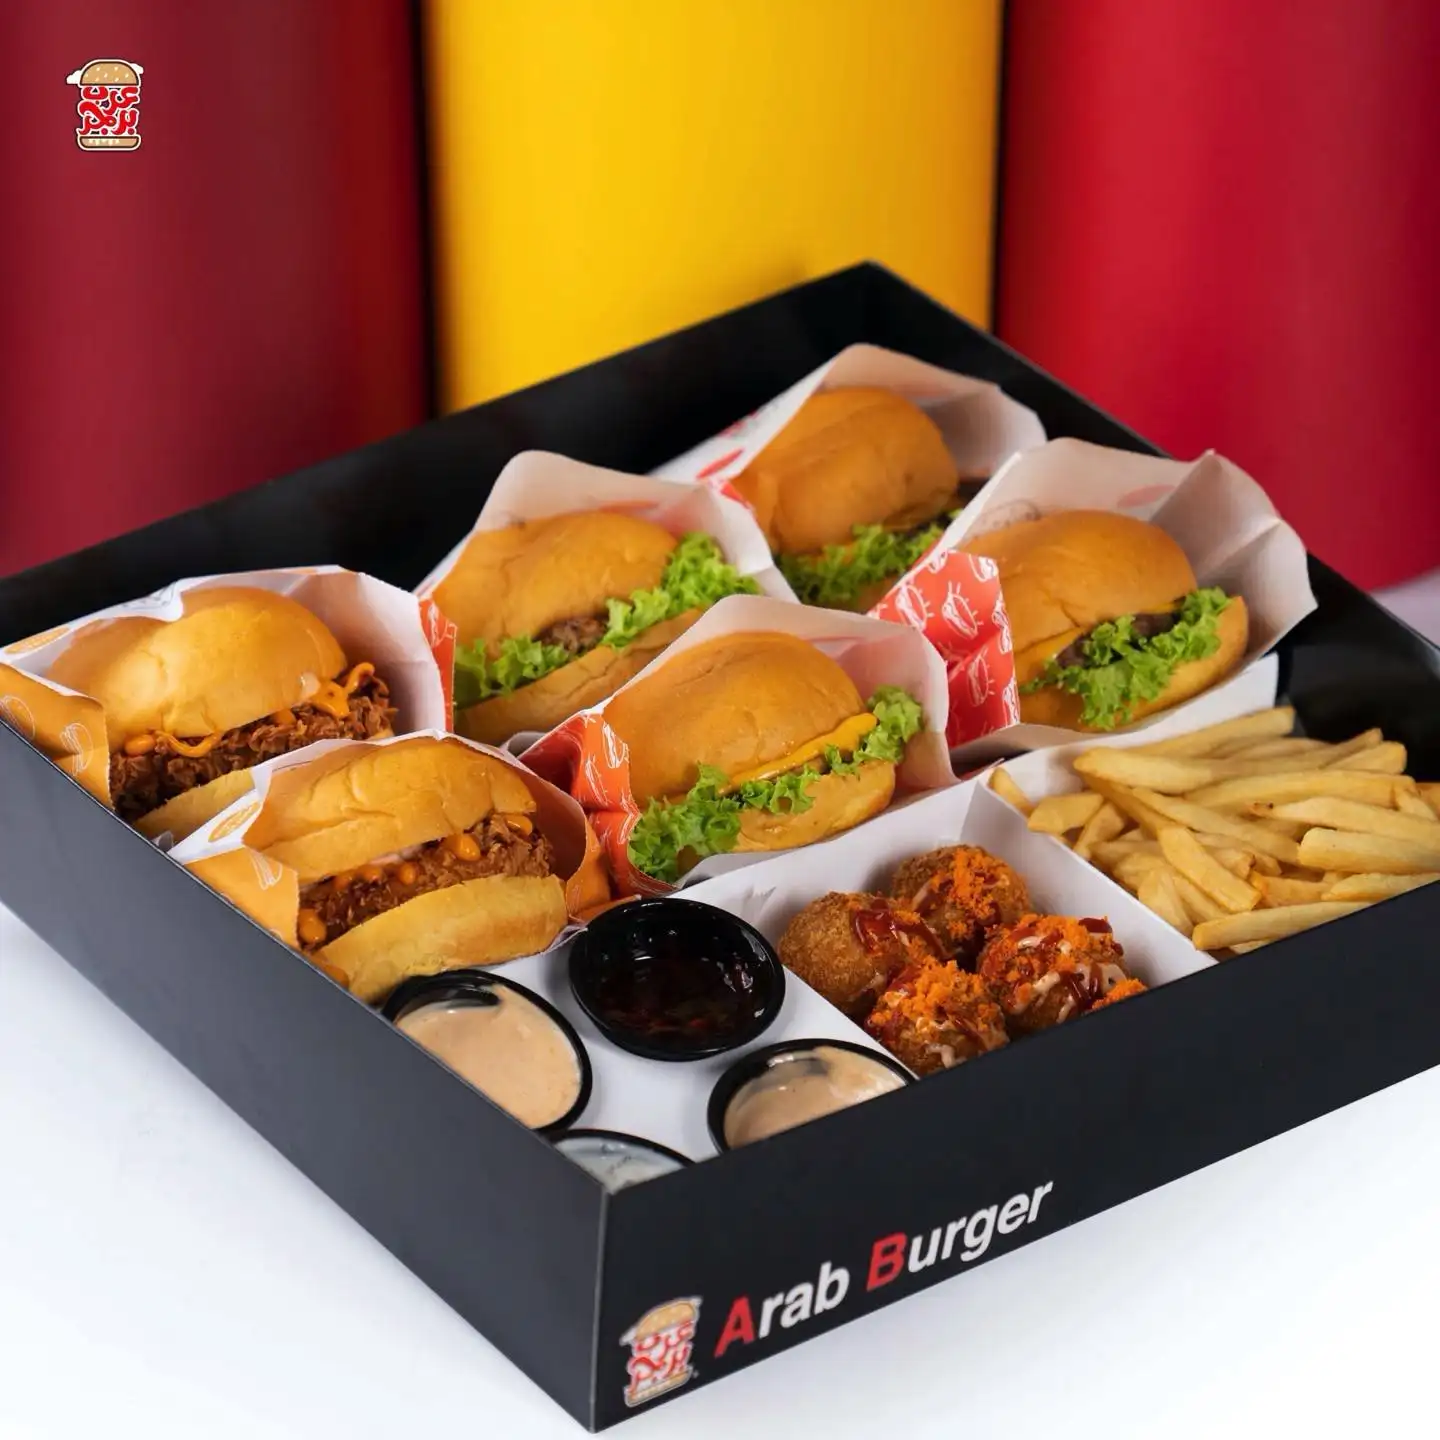 Karton in Takeaway-Klasse für Hot Dog französisches Friedchicken Burger-Schachtel Kartons mit Logo für Friedchickenflügel, Verpackung für Burger Lebensmittel